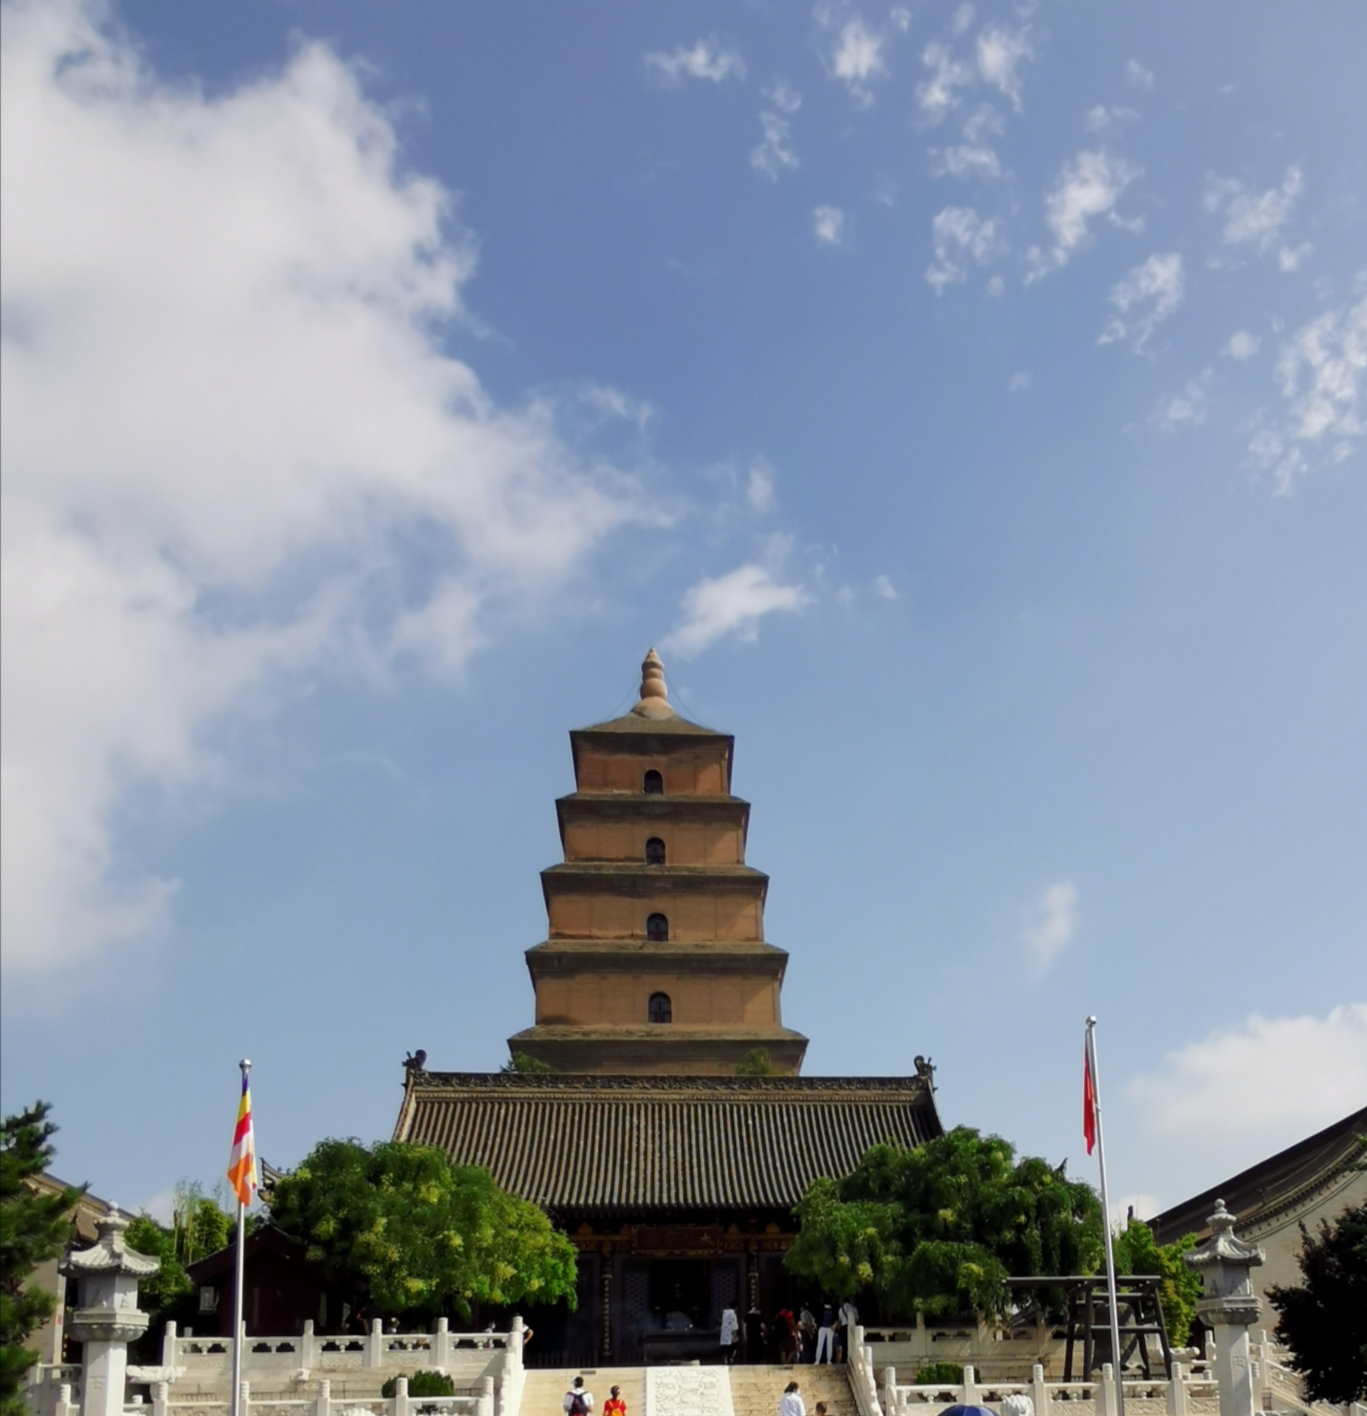 玄奘三蔵ゆかりの大慈恩寺を訪ねて 中国・陝西省 写真13枚 国際 